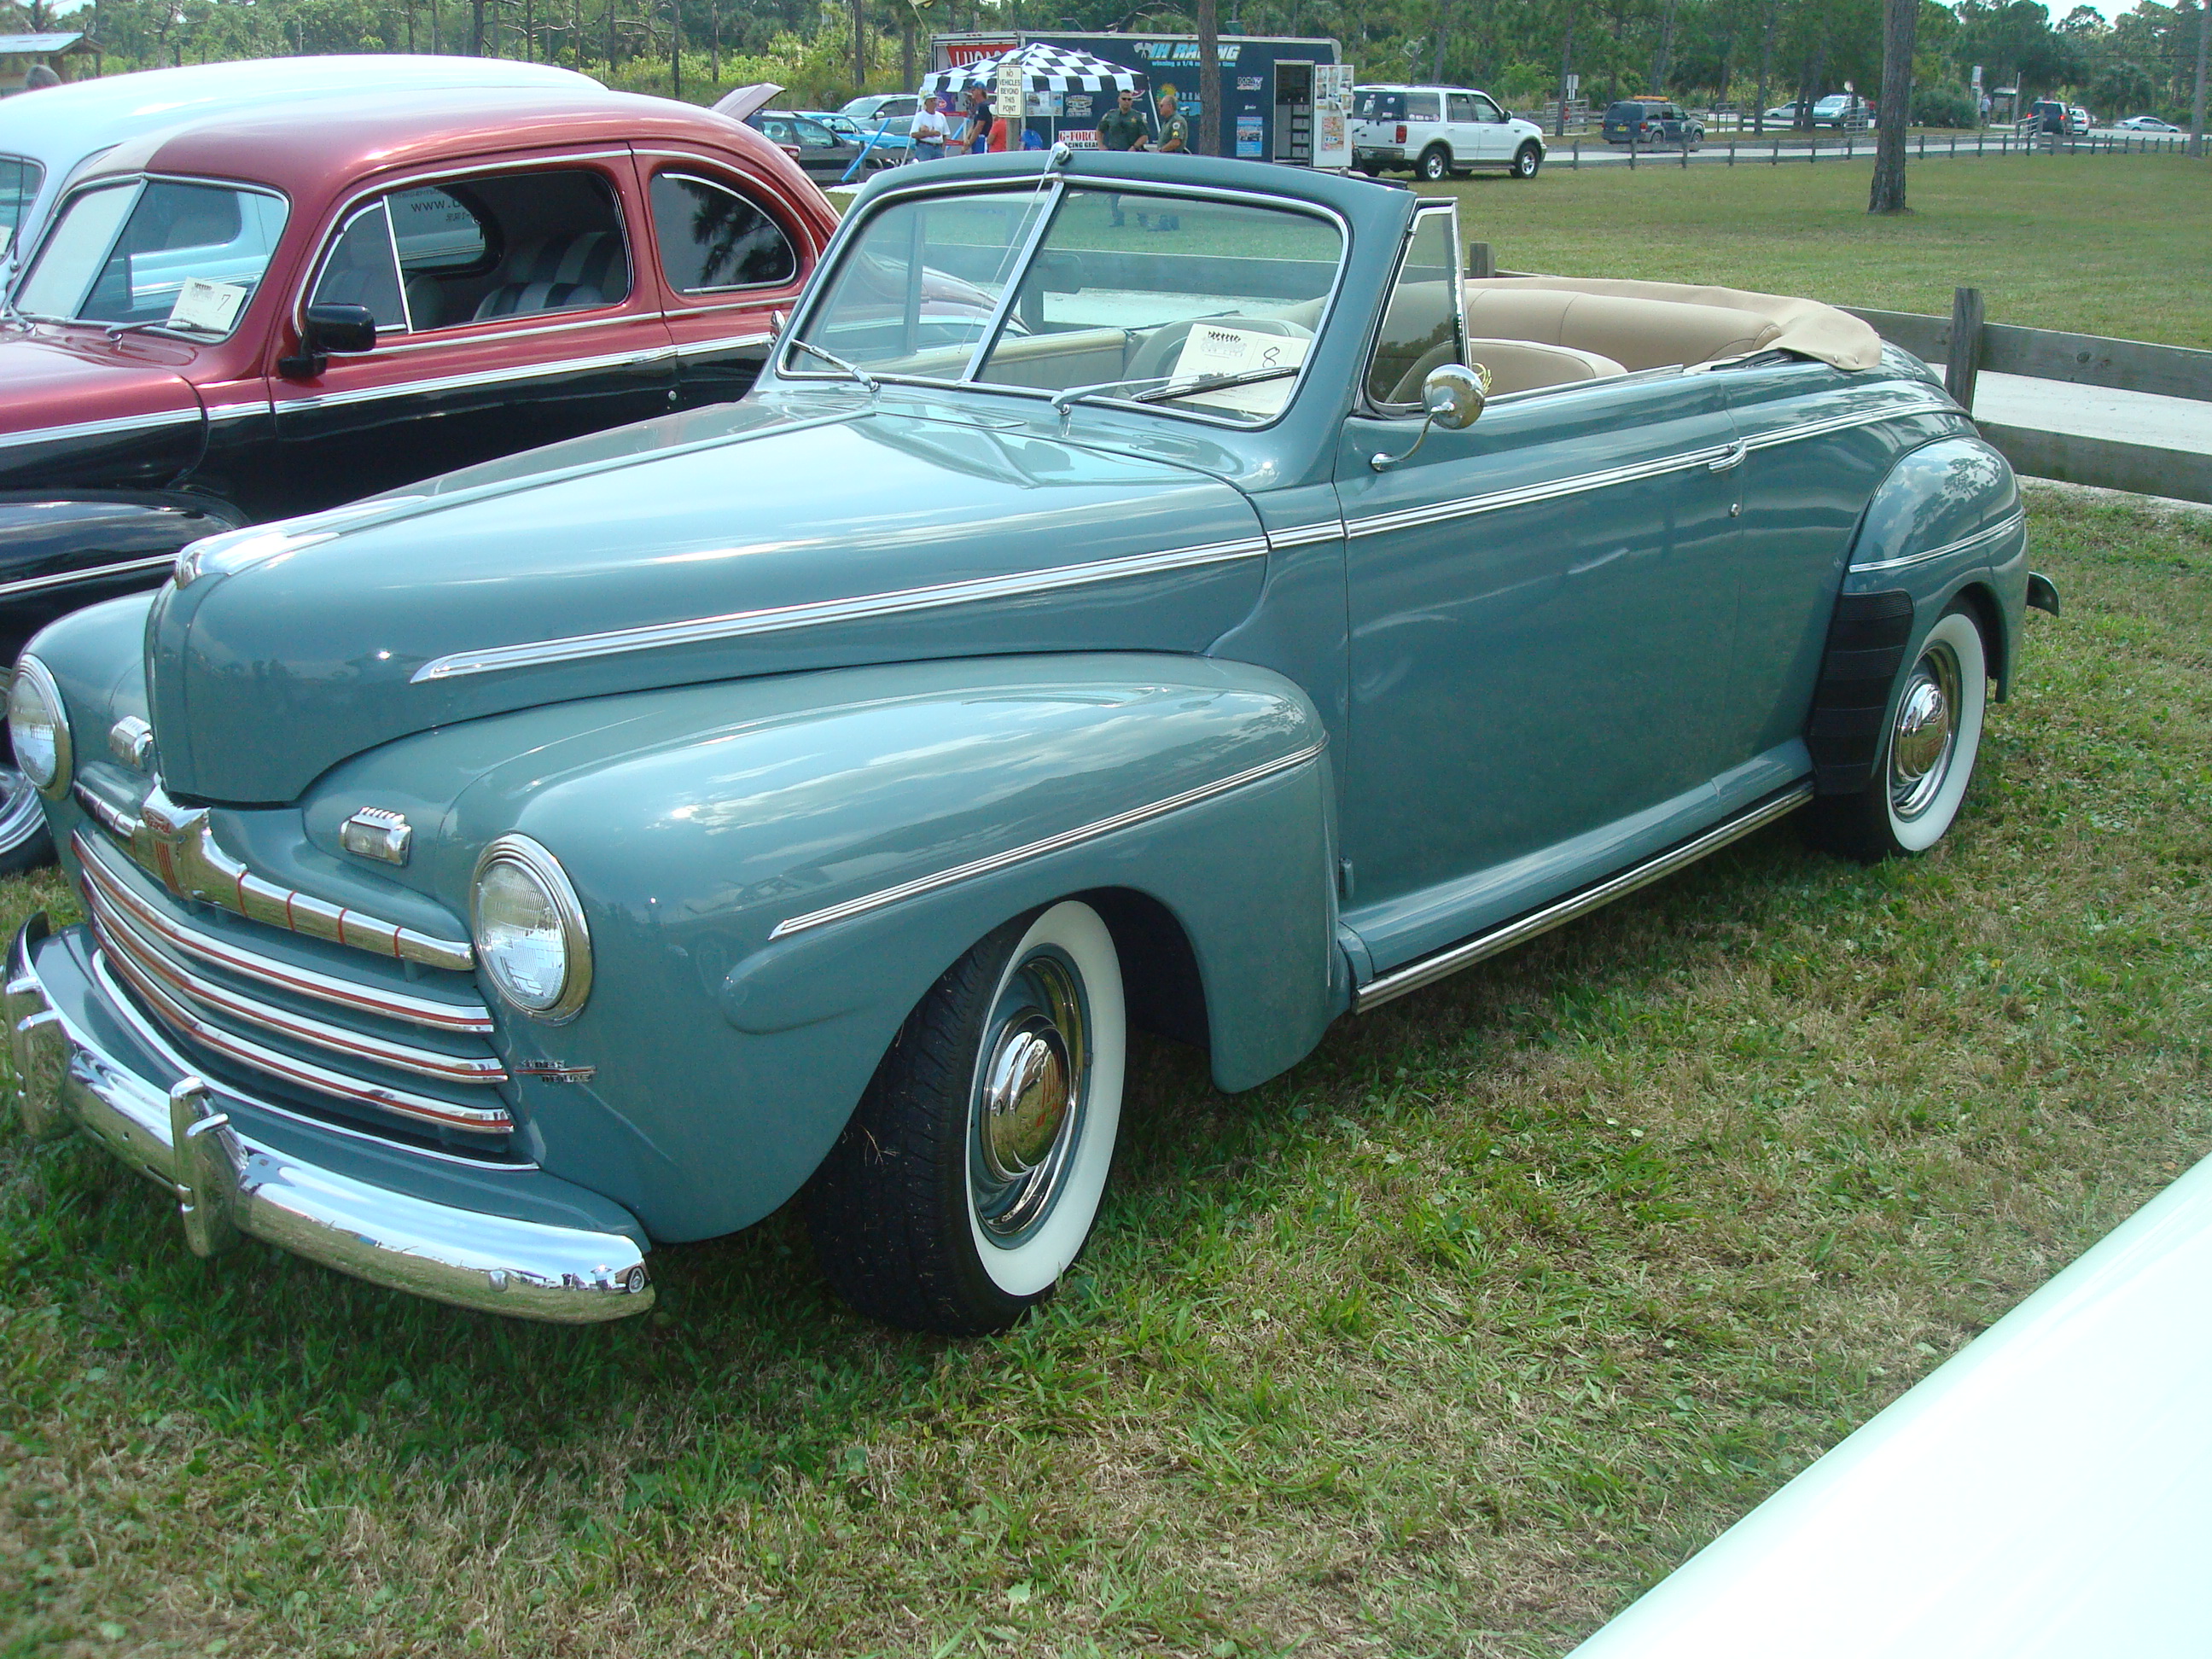 Steve's 1946 Ford Convert